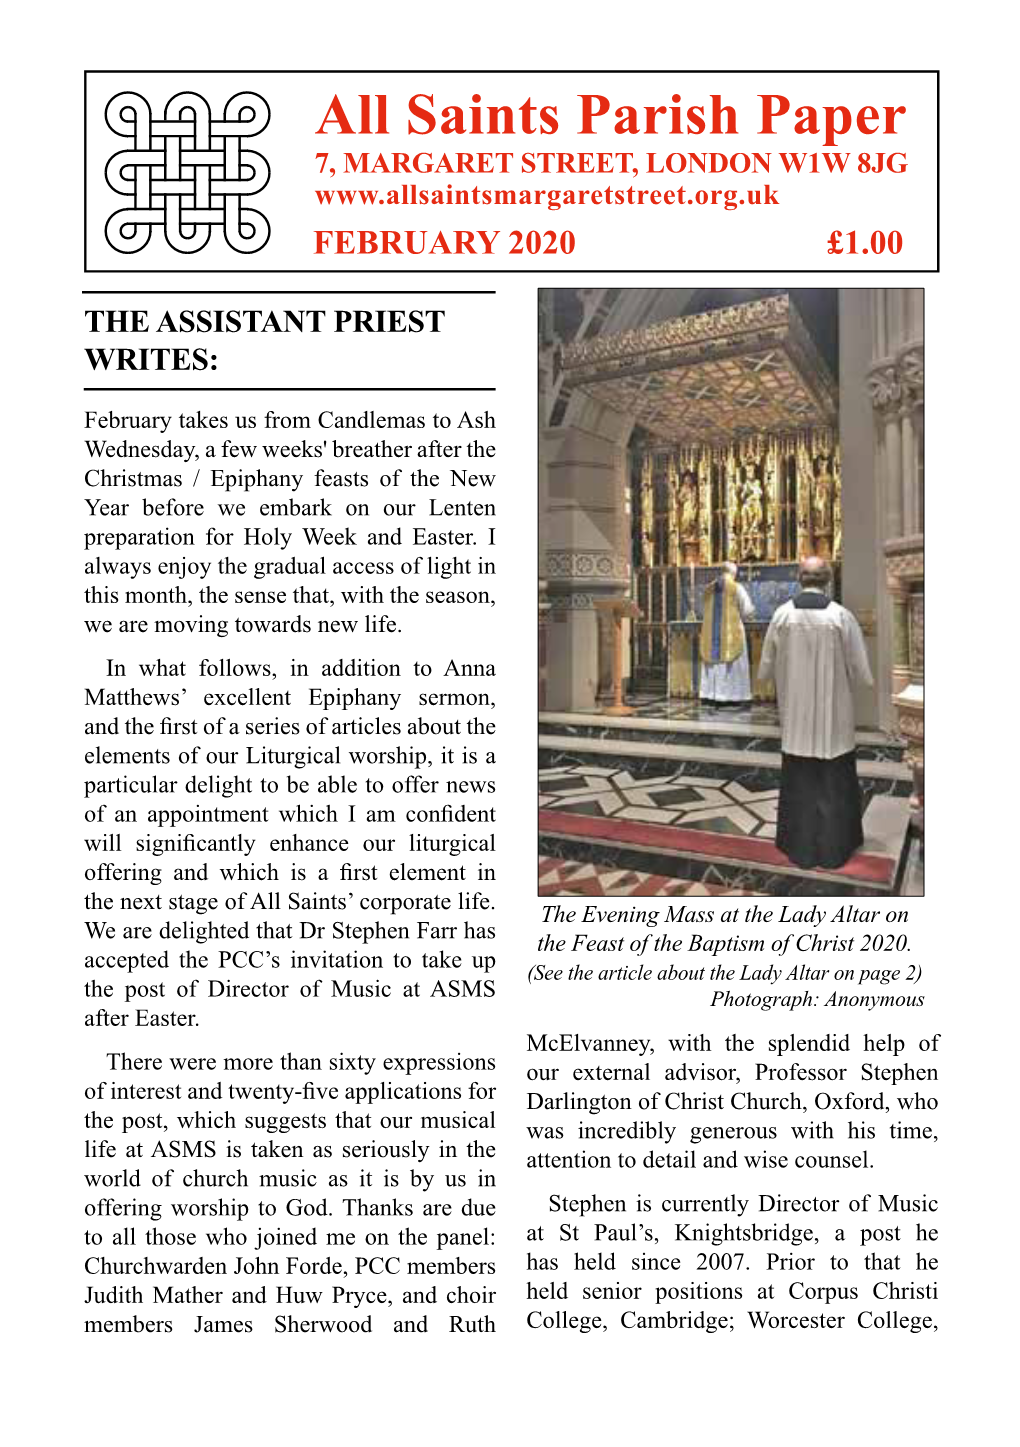 All Saints Parish Paper 7, MARGARET STREET, LONDON W1W 8JG FEBRUARY 2020 £1.00